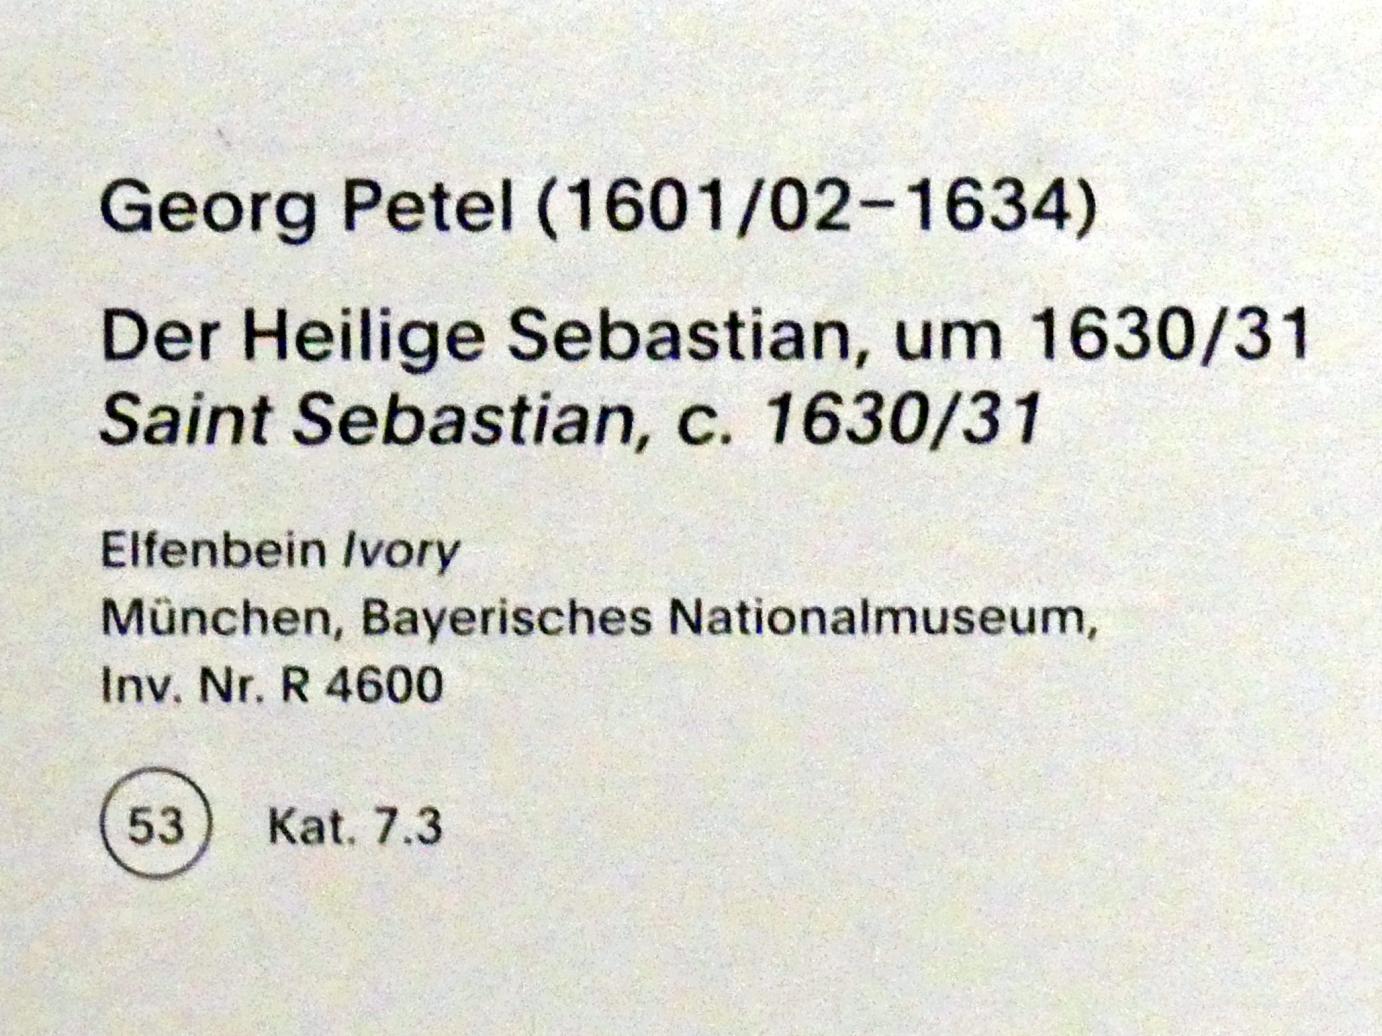 Georg Petel (1622–1631), Der Heilige Sebastian, München, Alte Pinakothek, Ausstellung "Van Dyck" vom 25.10.2019-02.02.2020, Von Antwerpen nach Italien - 4, um 1630–1631, Bild 4/4